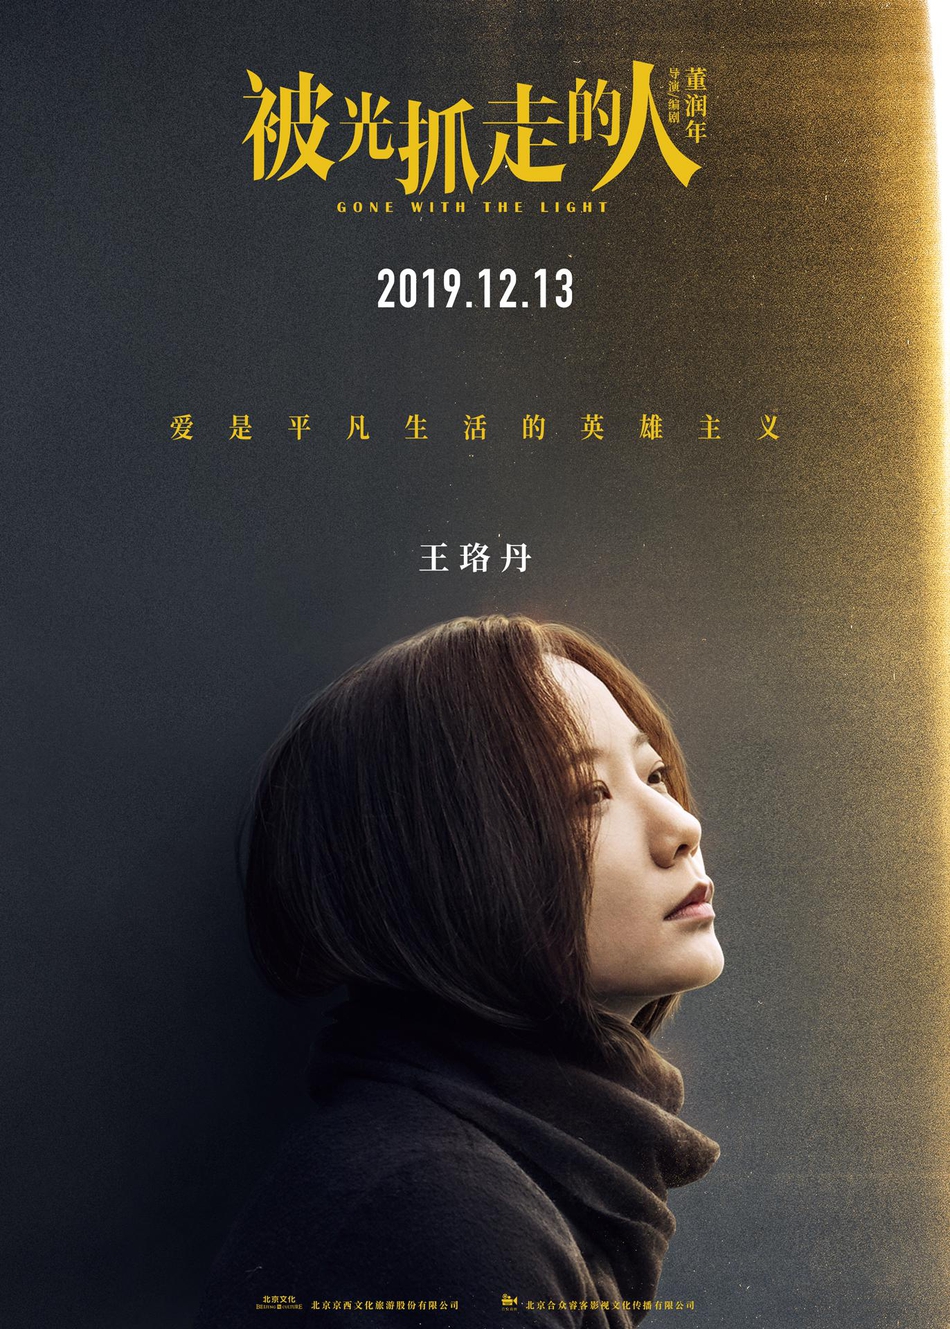 12月13日，黄渤、王珞丹主演电影《被光抓走的人》定档海报人物图片第3张